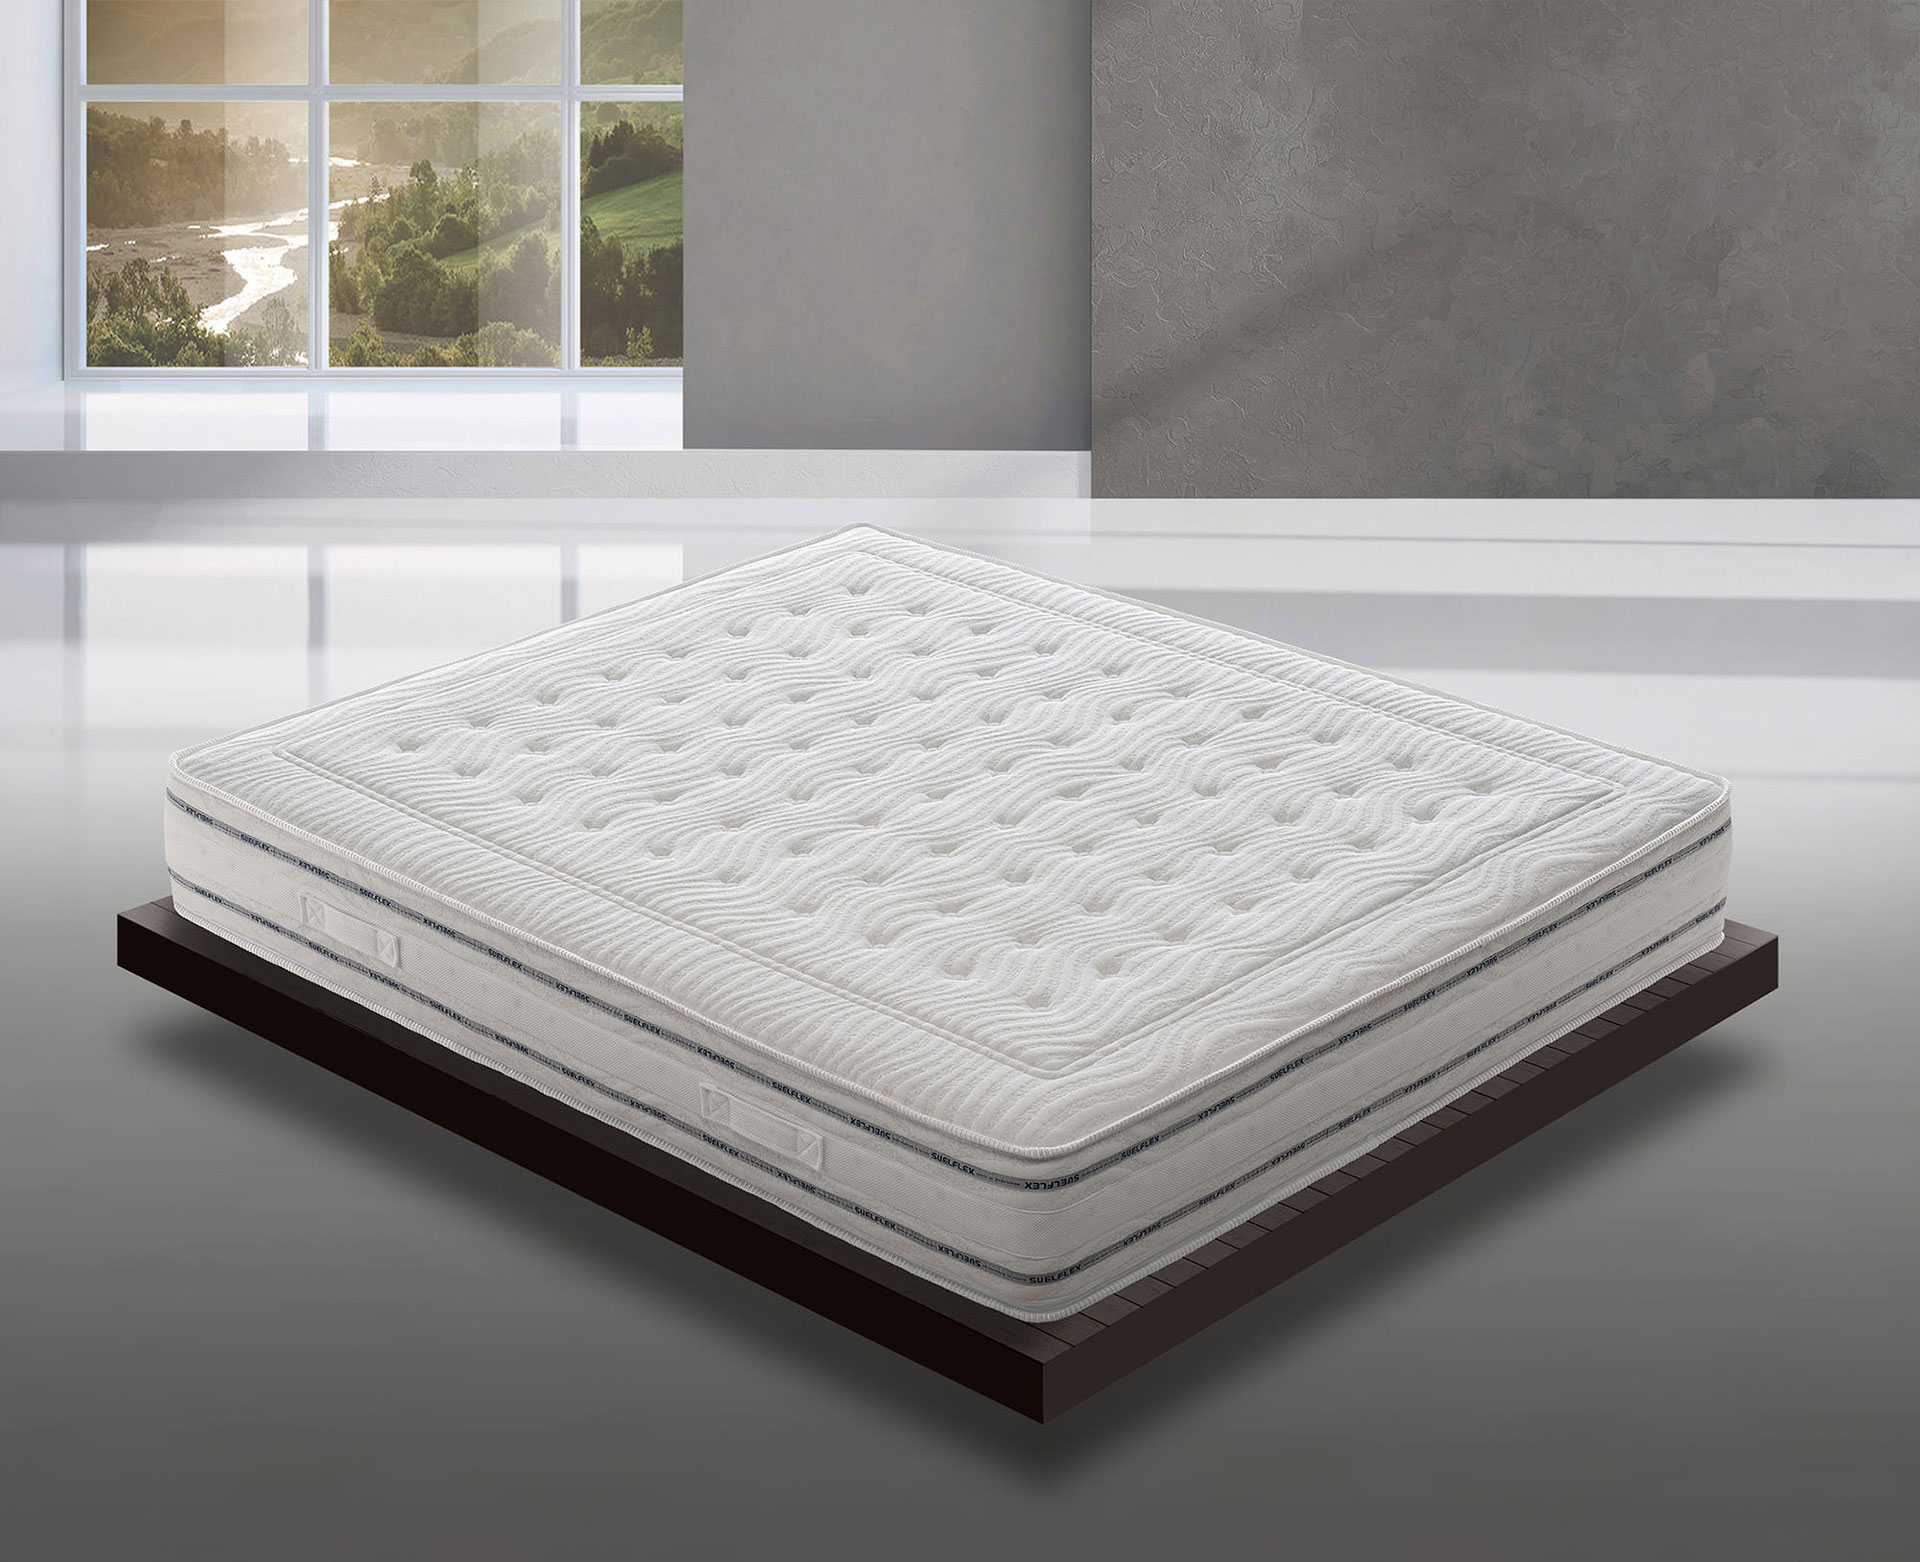 Comfort Collection - Suelflex Materassi di benessere - Molle Insacchettate - Molle Bonnel  materasso ventilato materassi jolly materasso 